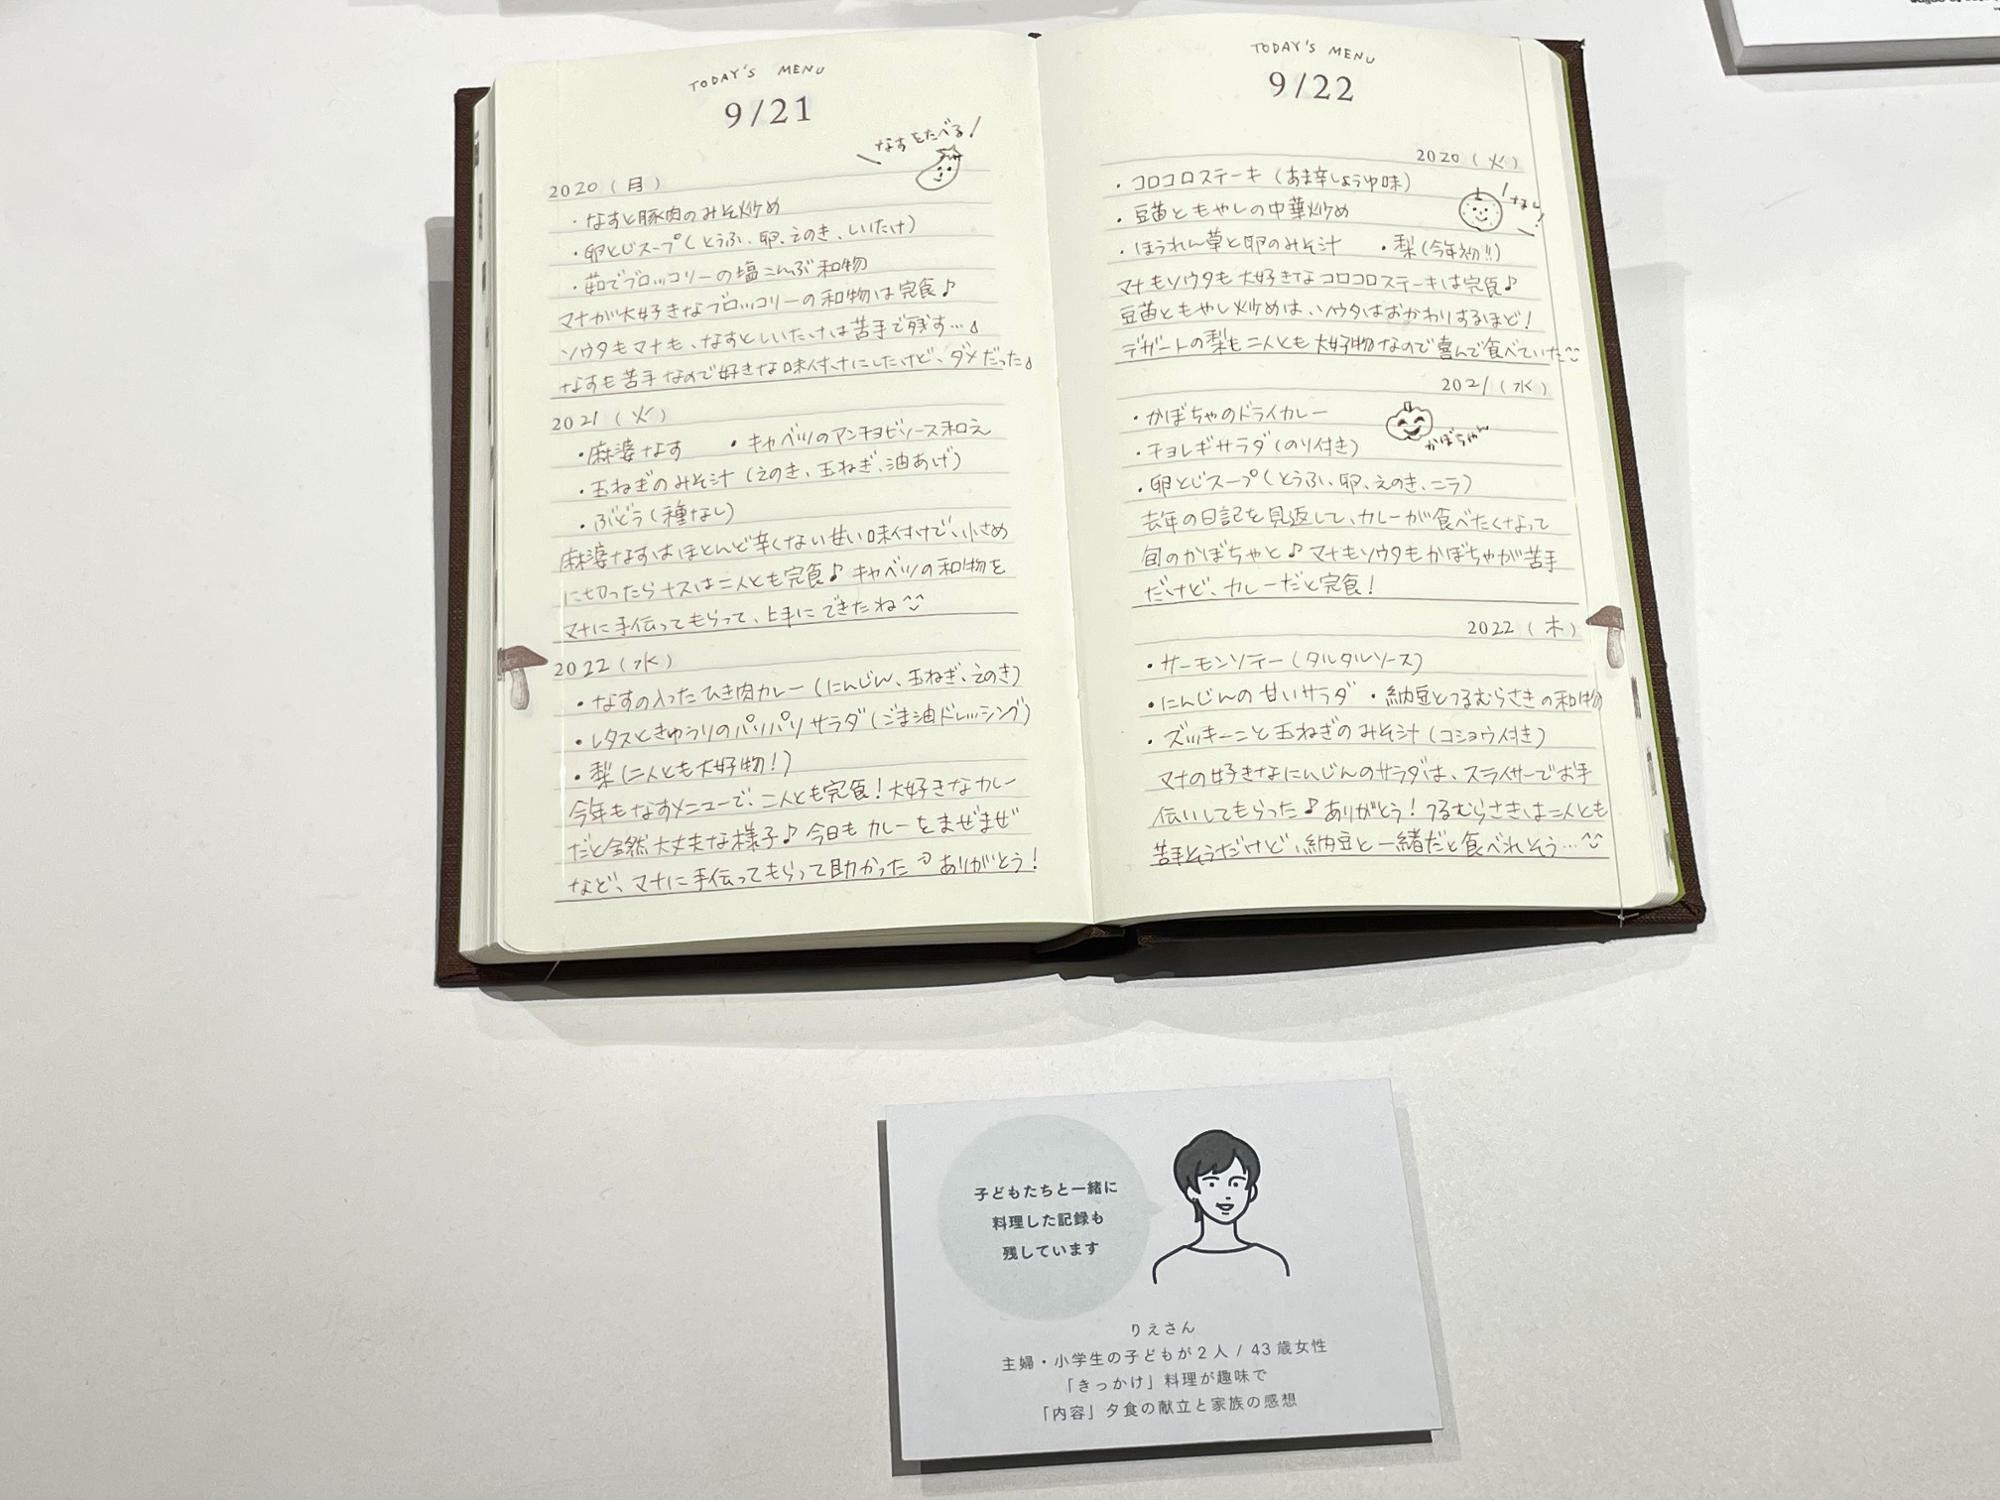 プロフィールを想定して書かれた連用日記の記入見本。デザインフィル社内の人が書いたとのこと。